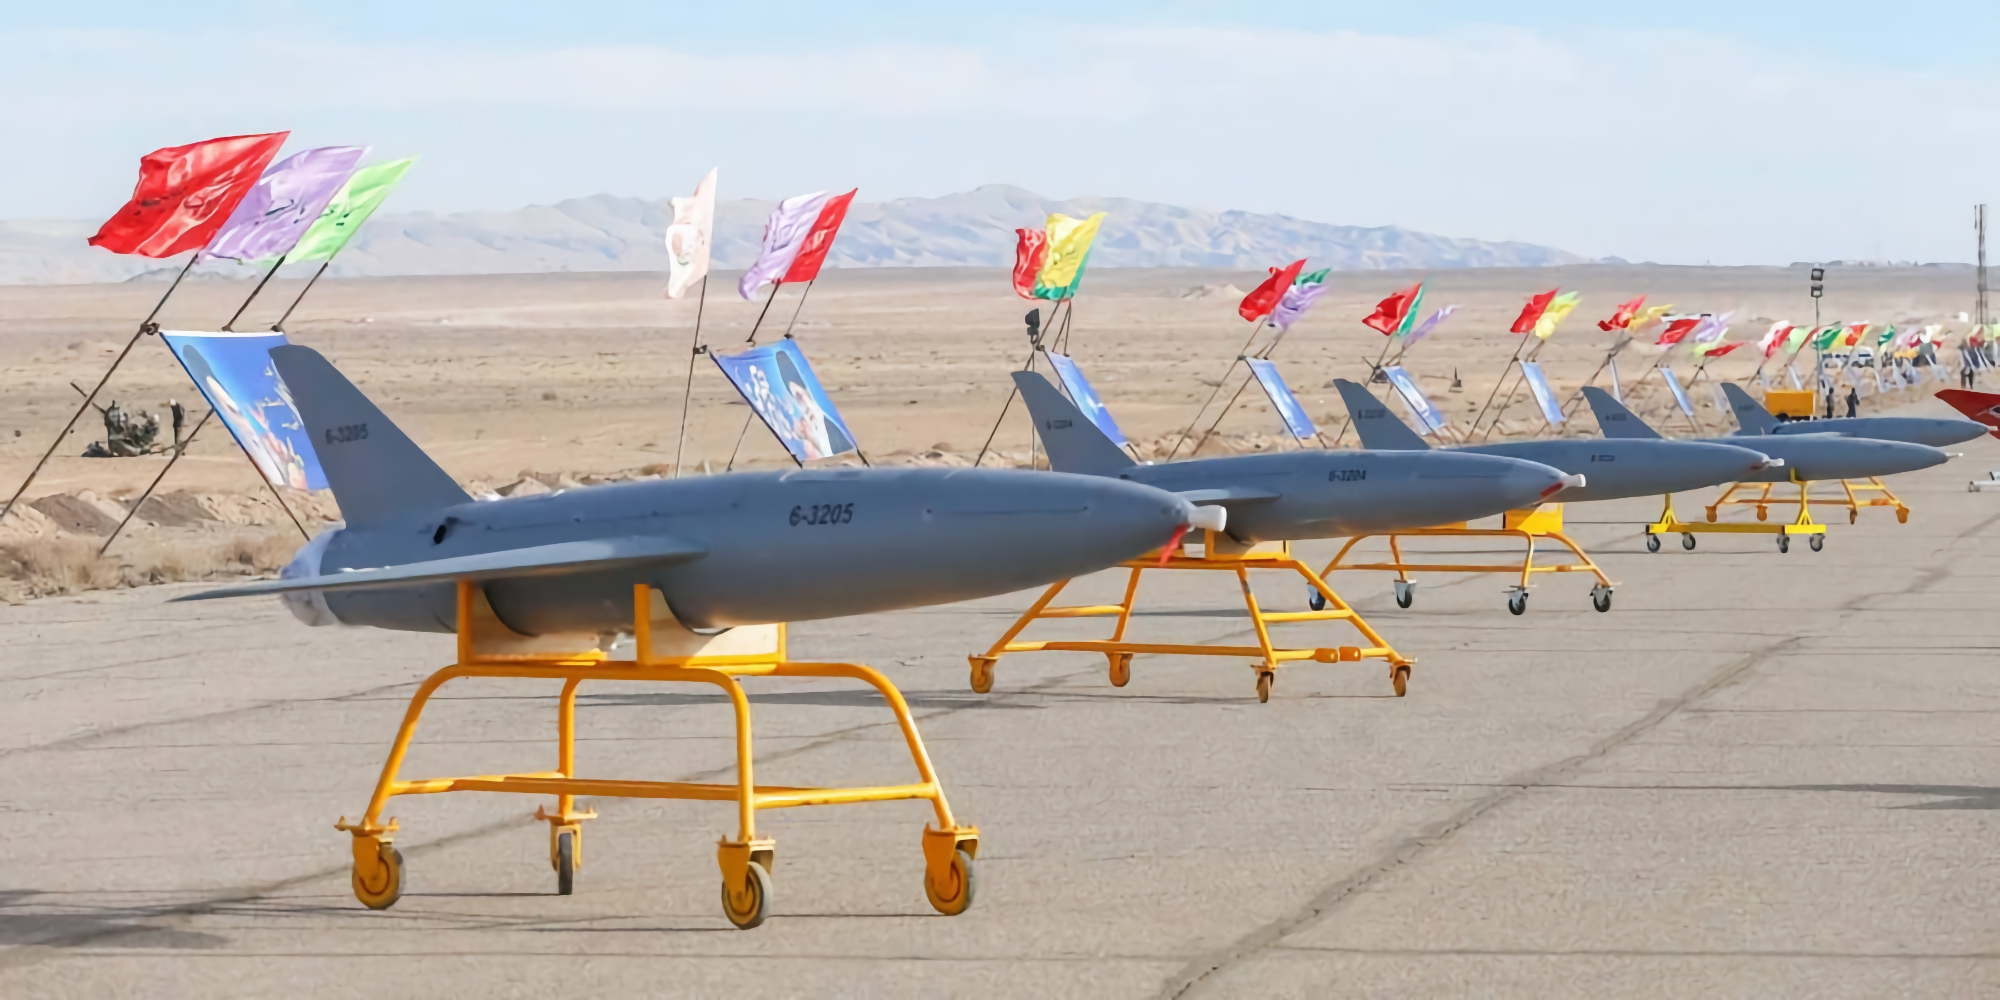 Media: Izrael przekazuje Ukrainie zaawansowane systemy antydronowe, aby pomóc AFU w walce z irańskimi dronami kamikadze Shahed-136